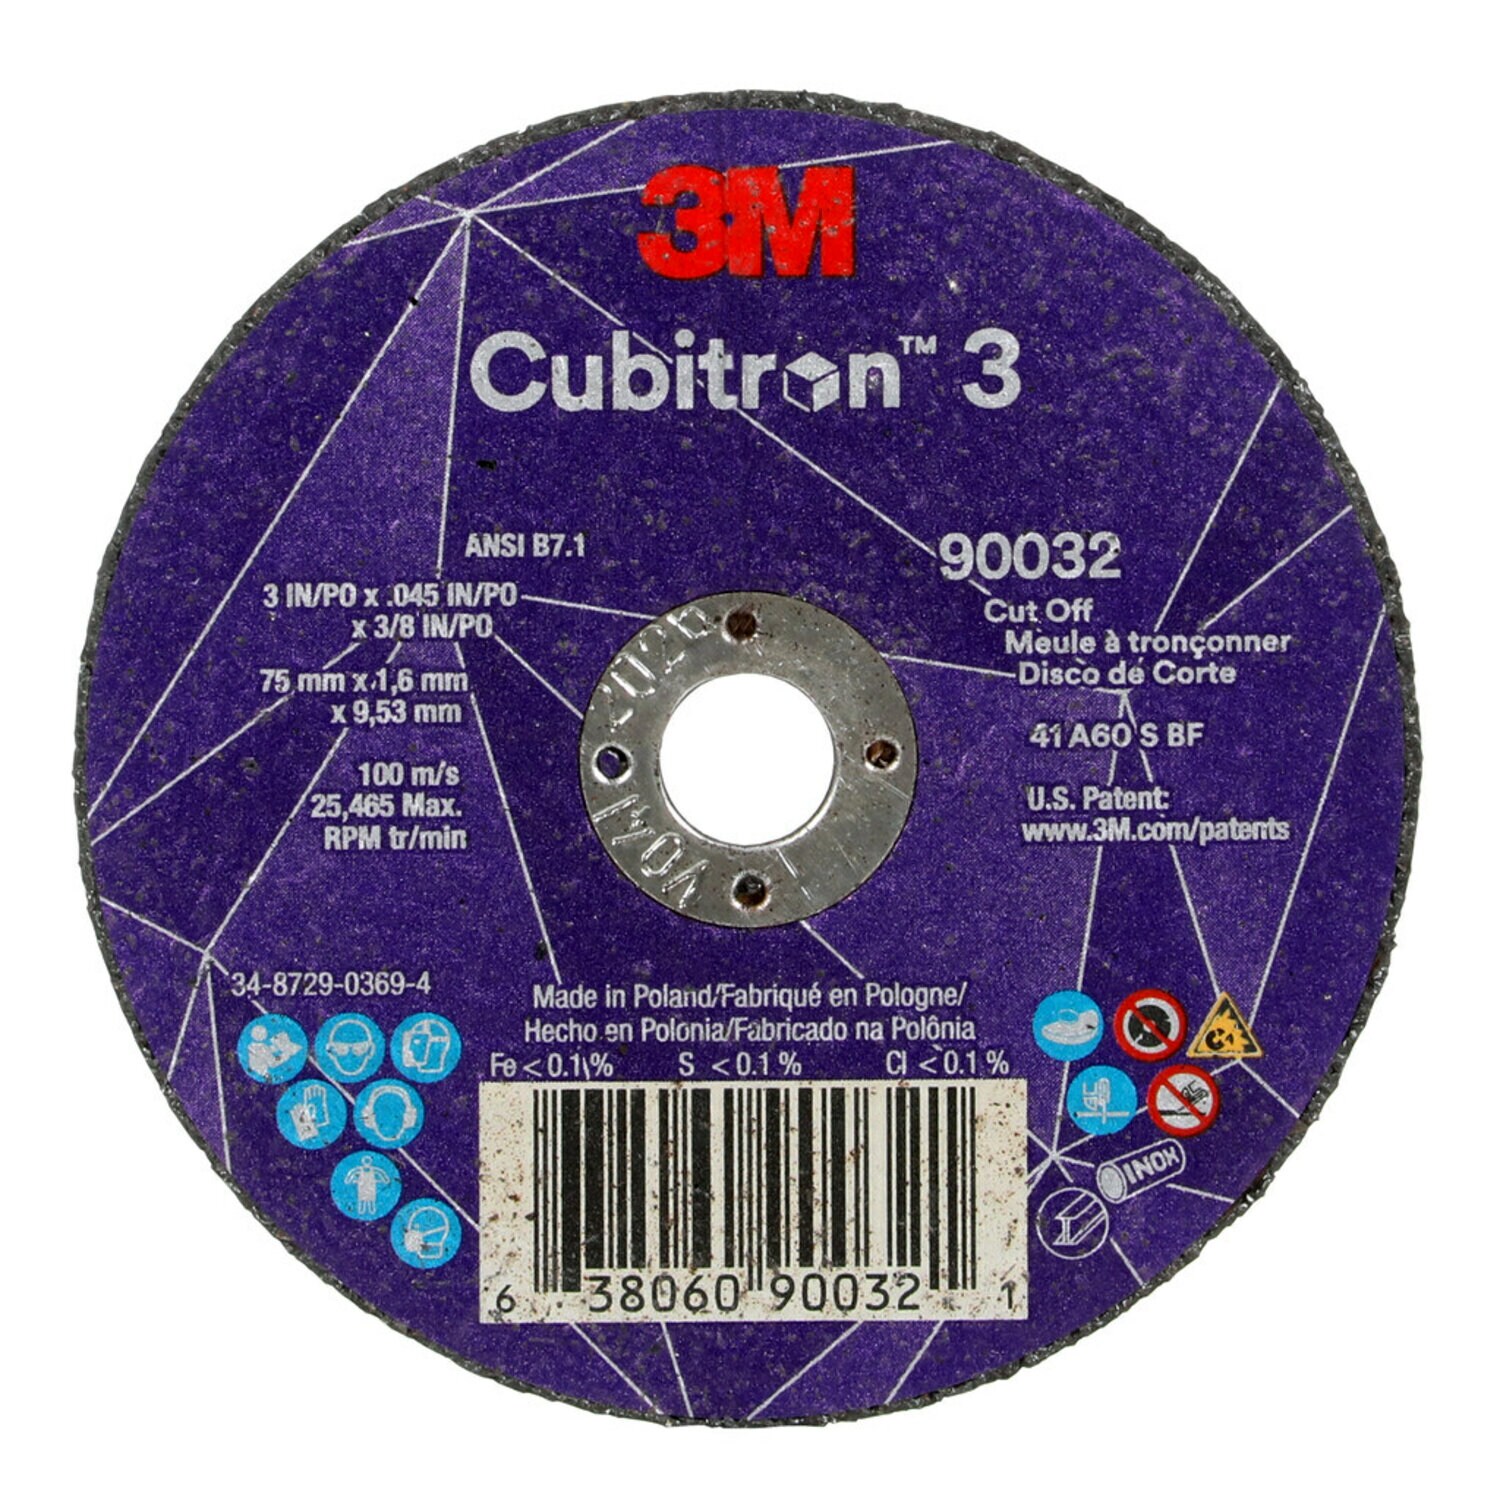 7100303858 - 3M Cubitron 3 Cut-Off Wheel, 90032, 60+, T1, 3 in x 0.045 in x 3/8 in
(75 x 1.6 x 9.53 mm), ANSI, 25/Pack, 50 ea/Case